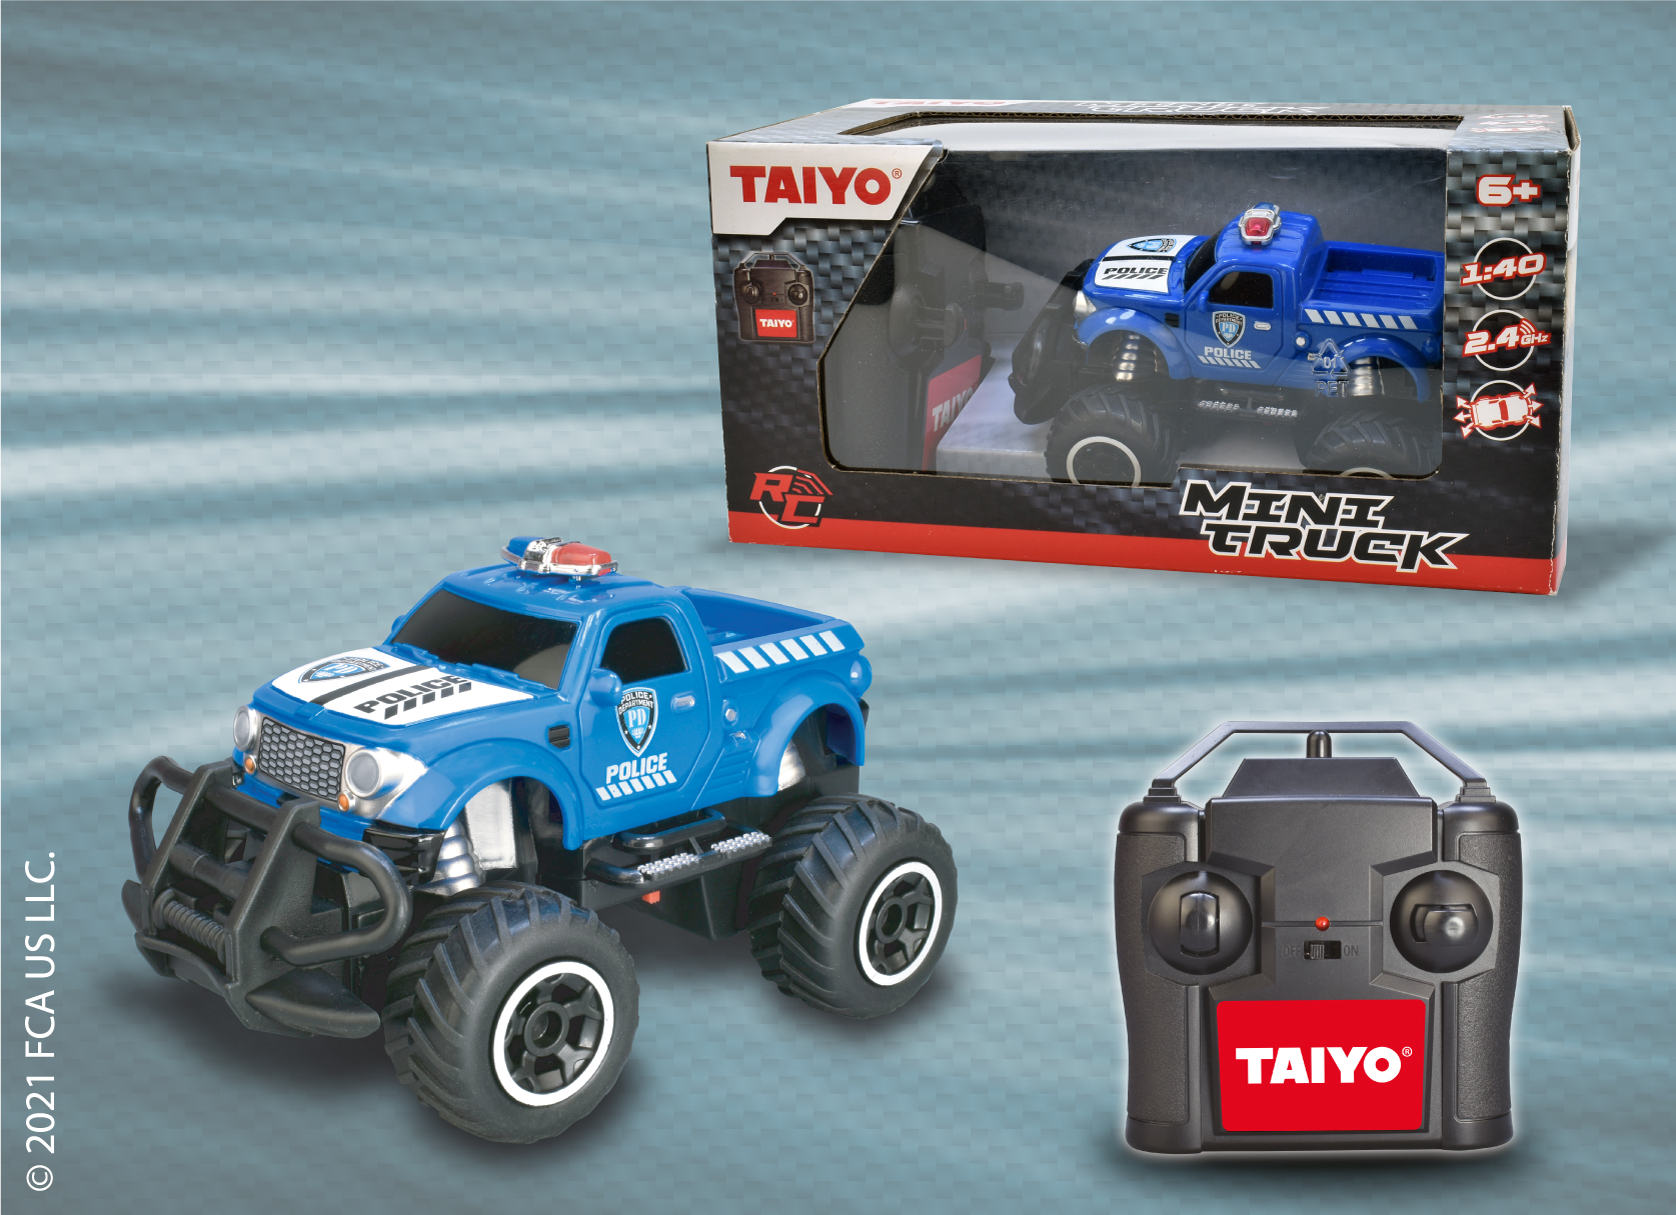 Taiyo - Mini truck